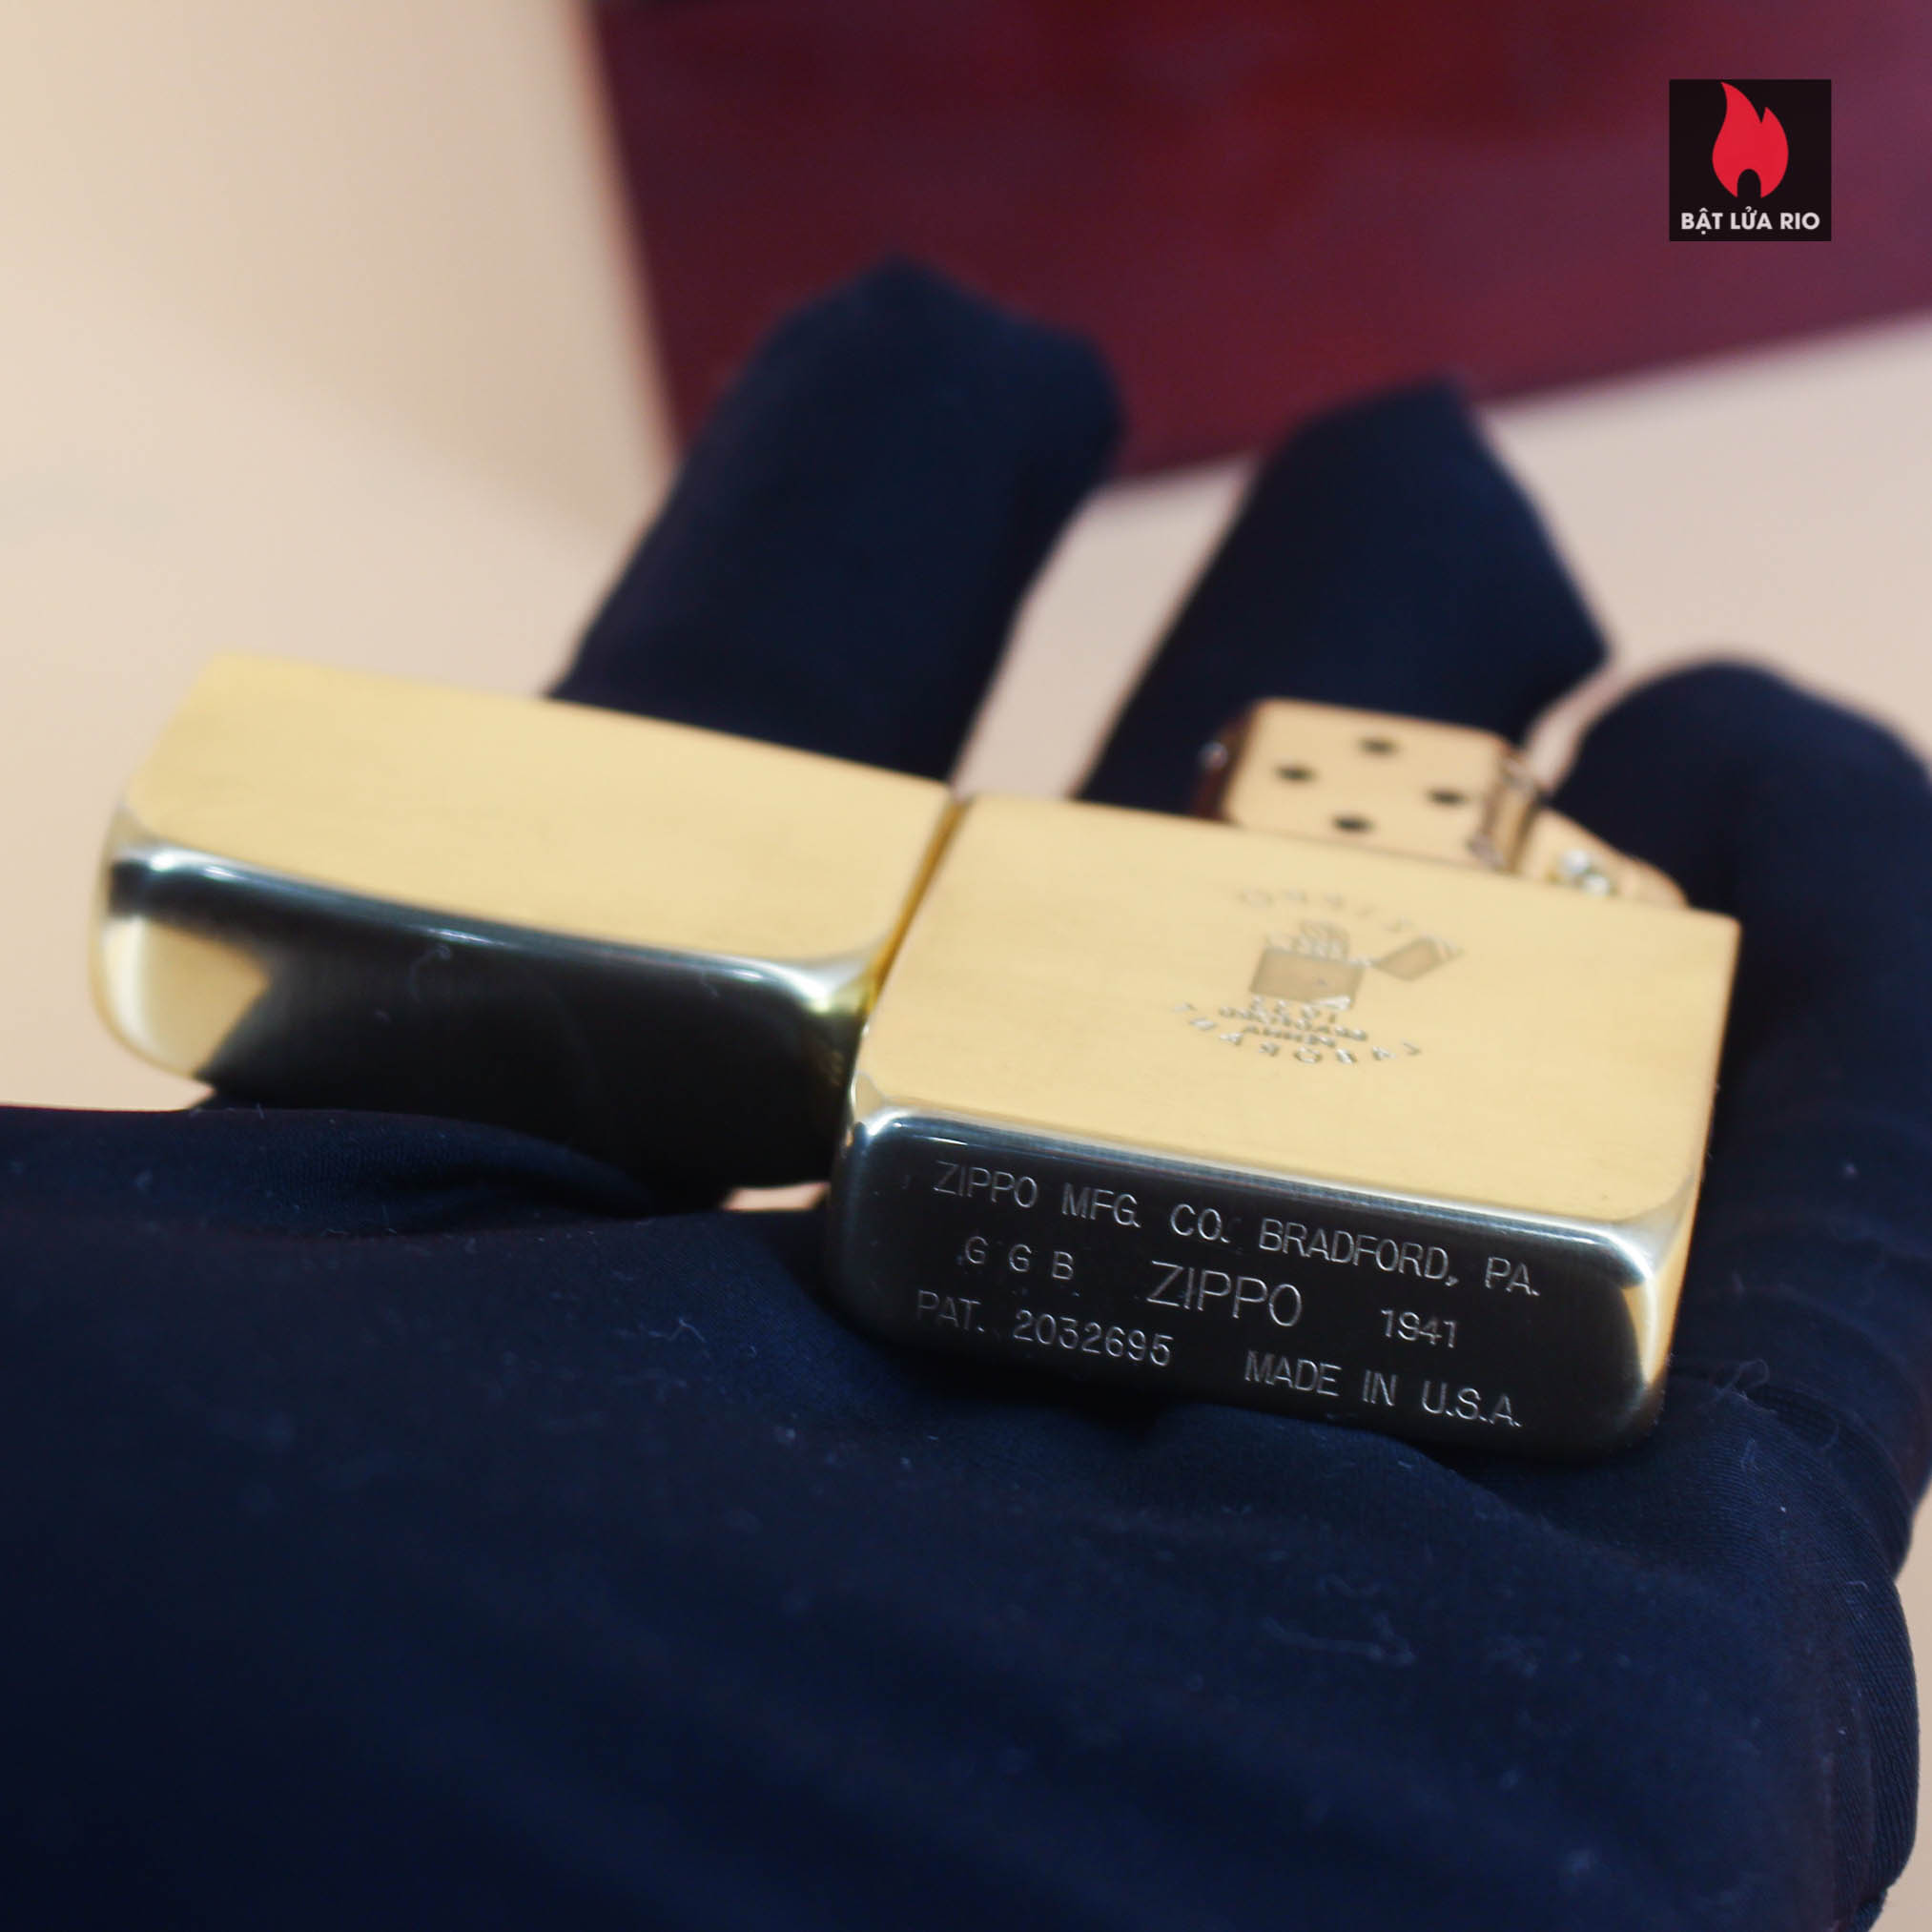 HIẾM - SIÊU PHẨM Zippo vàng nguyên khối Solid Gold 18K – Zippo Signet Lighter 18K Solid Gold - GGB 1941 - Giới hạn 300 chiếc trên toàn thế giới - Limited 24/300 6